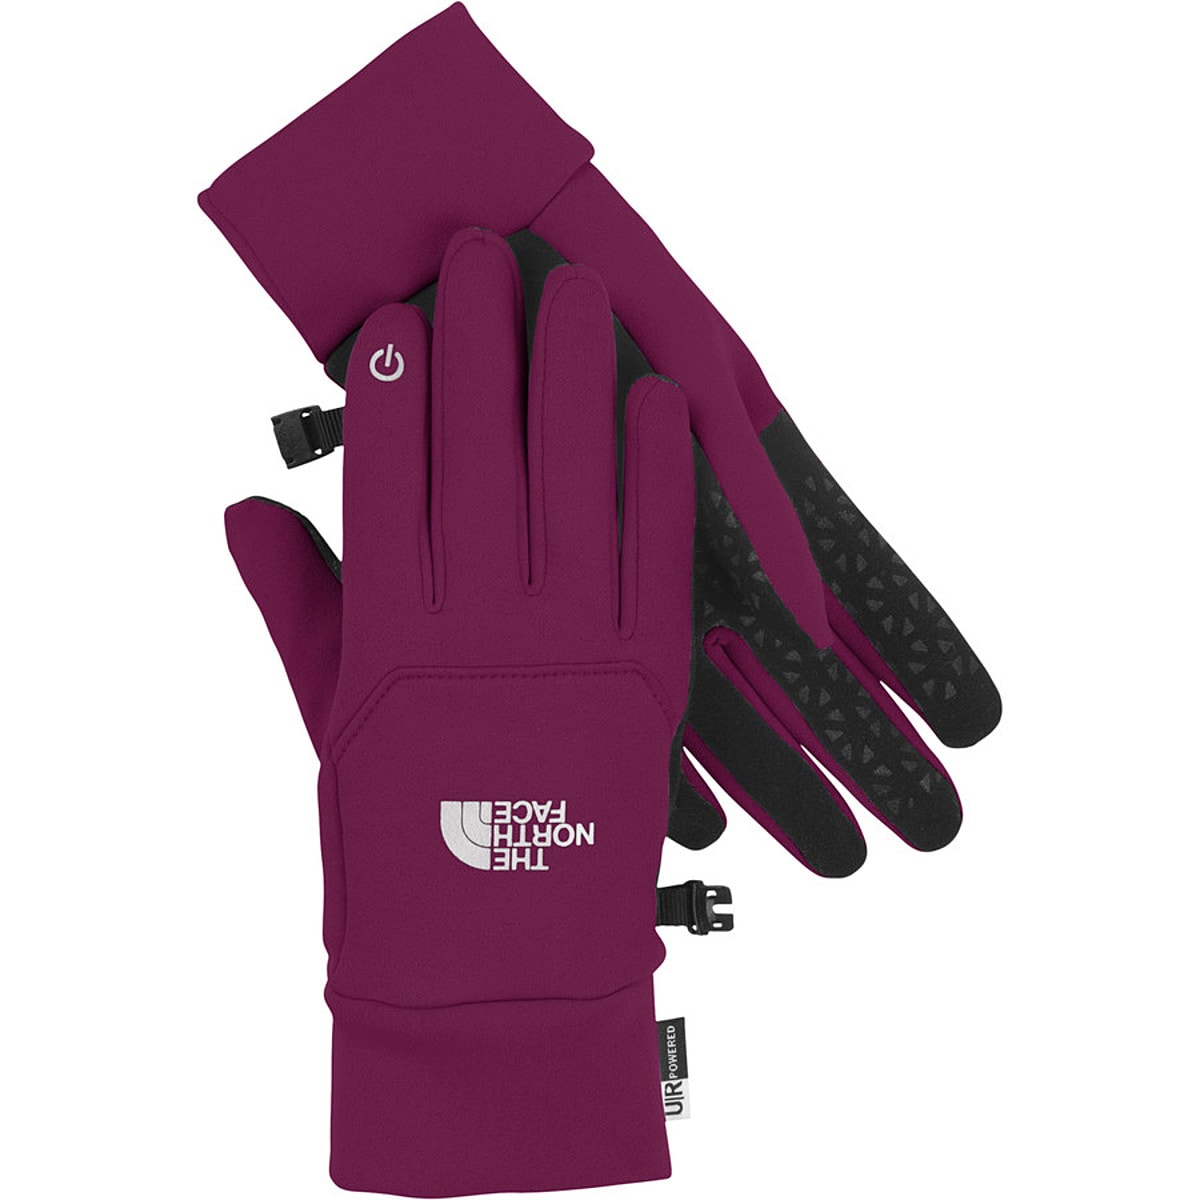 north face women's etip gloves